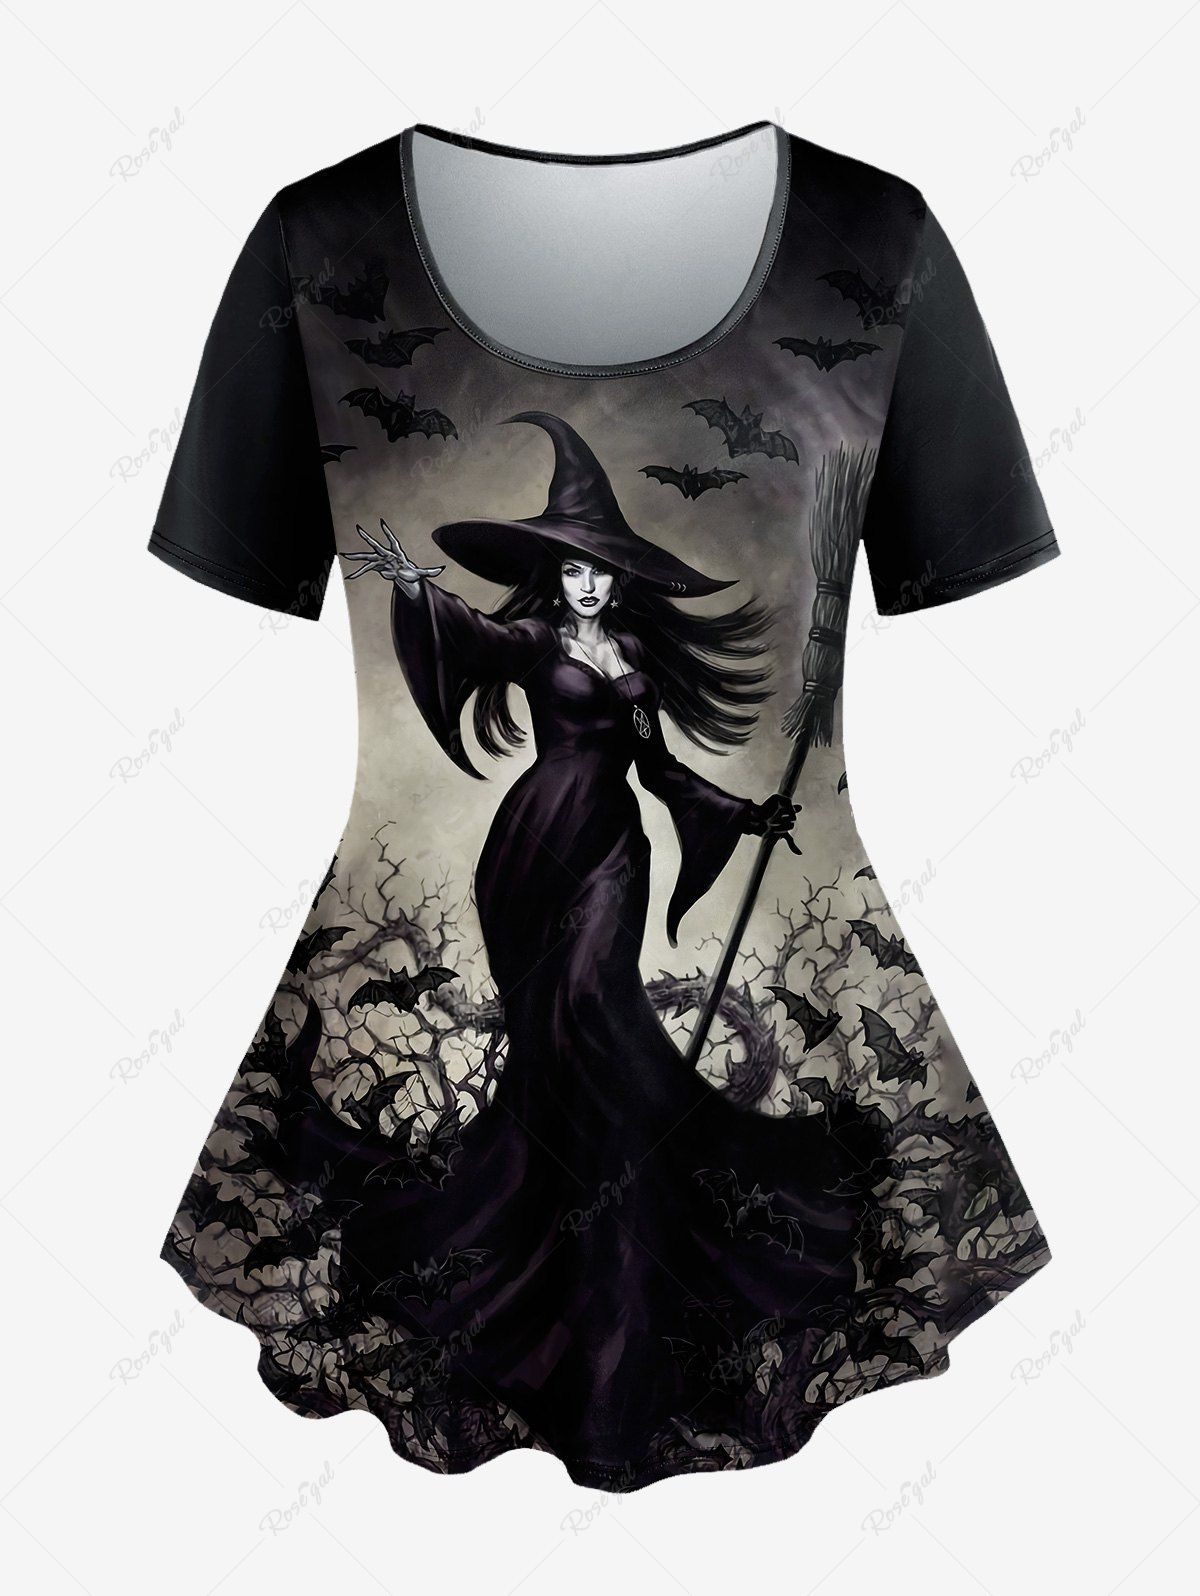 T-shirt D'Halloween Branche de Sorcière Chauve-souris Imprimés à Manches Courtes de Grande Taille Noir 5X